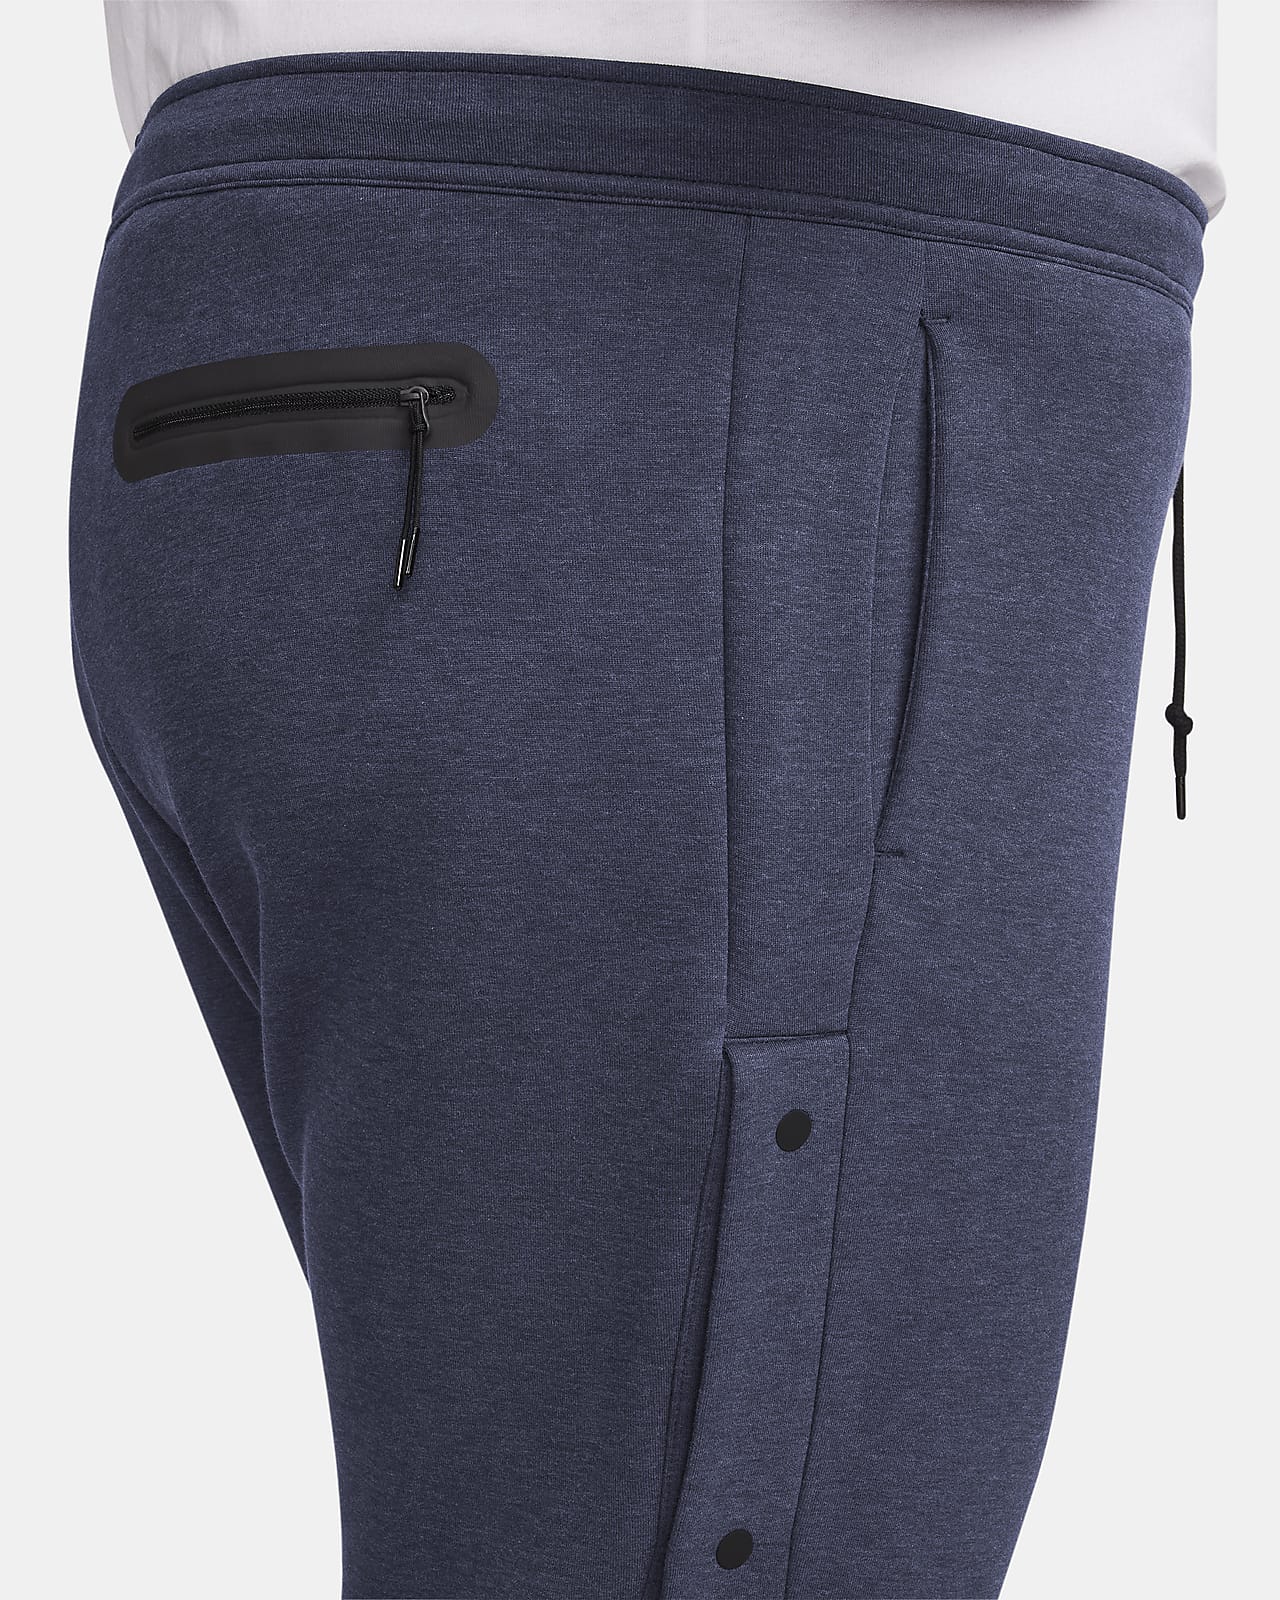 Nike Sportswear Tech Fleece Big Pants Blue